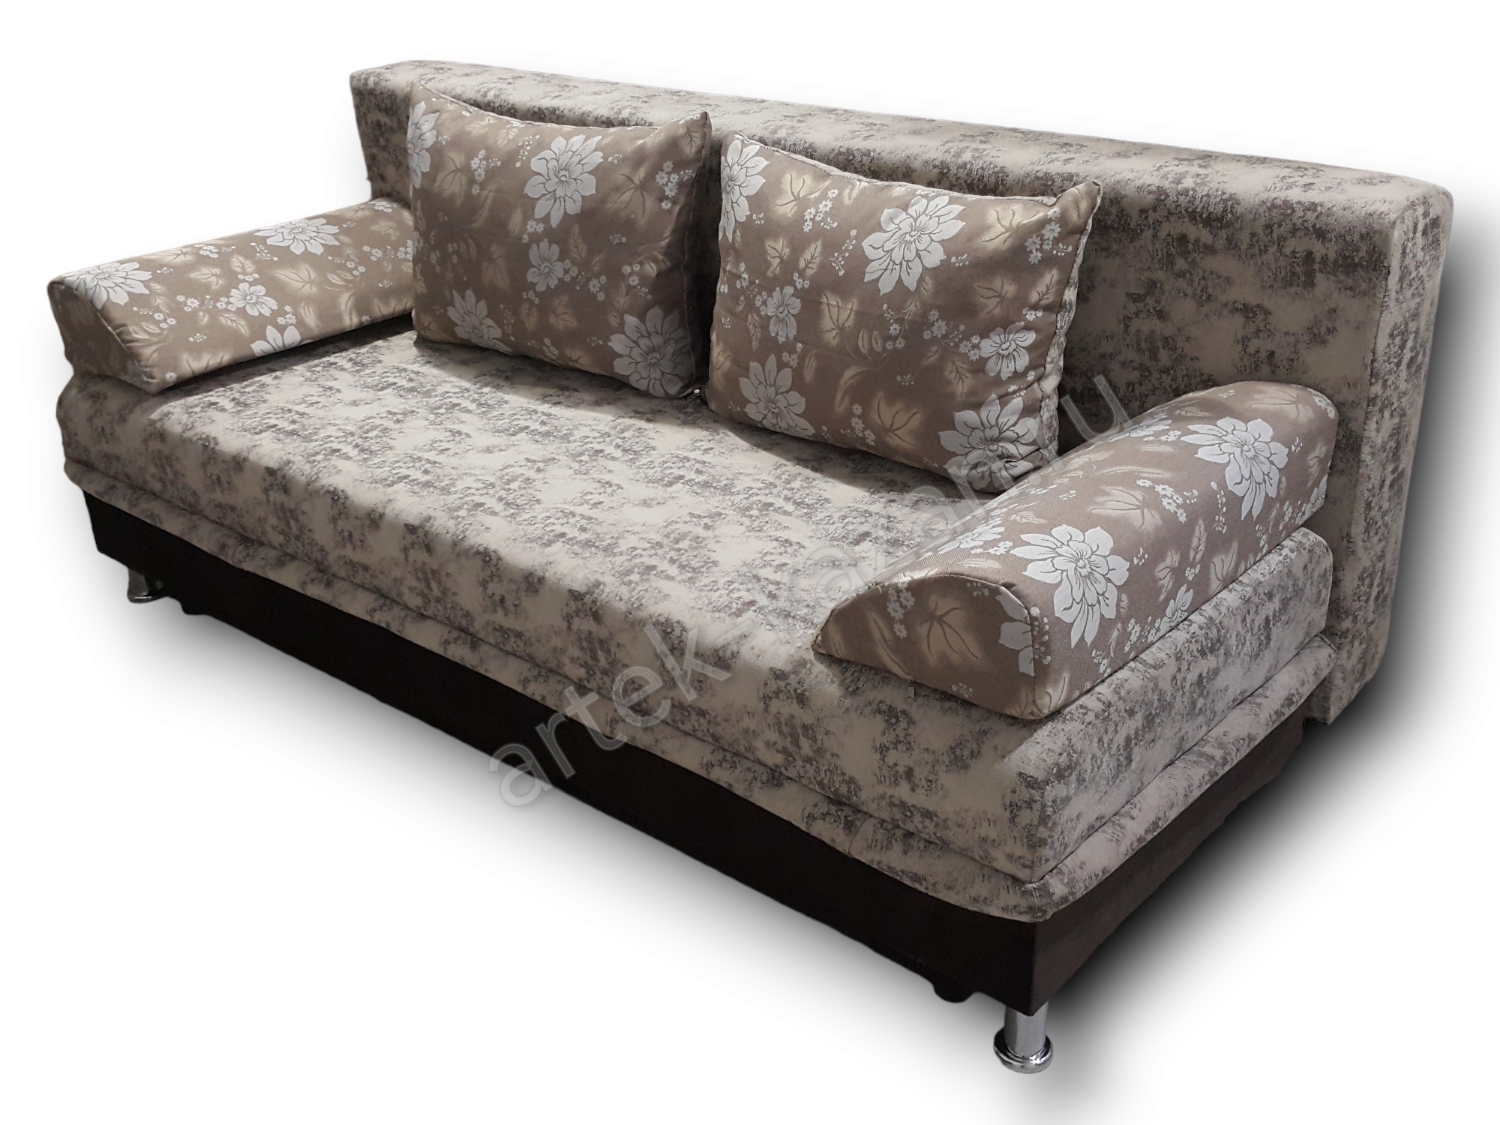 диван еврокнижка Эконом фото № 108. Купить недорогой диван по низкой цене от производителя можно у нас.